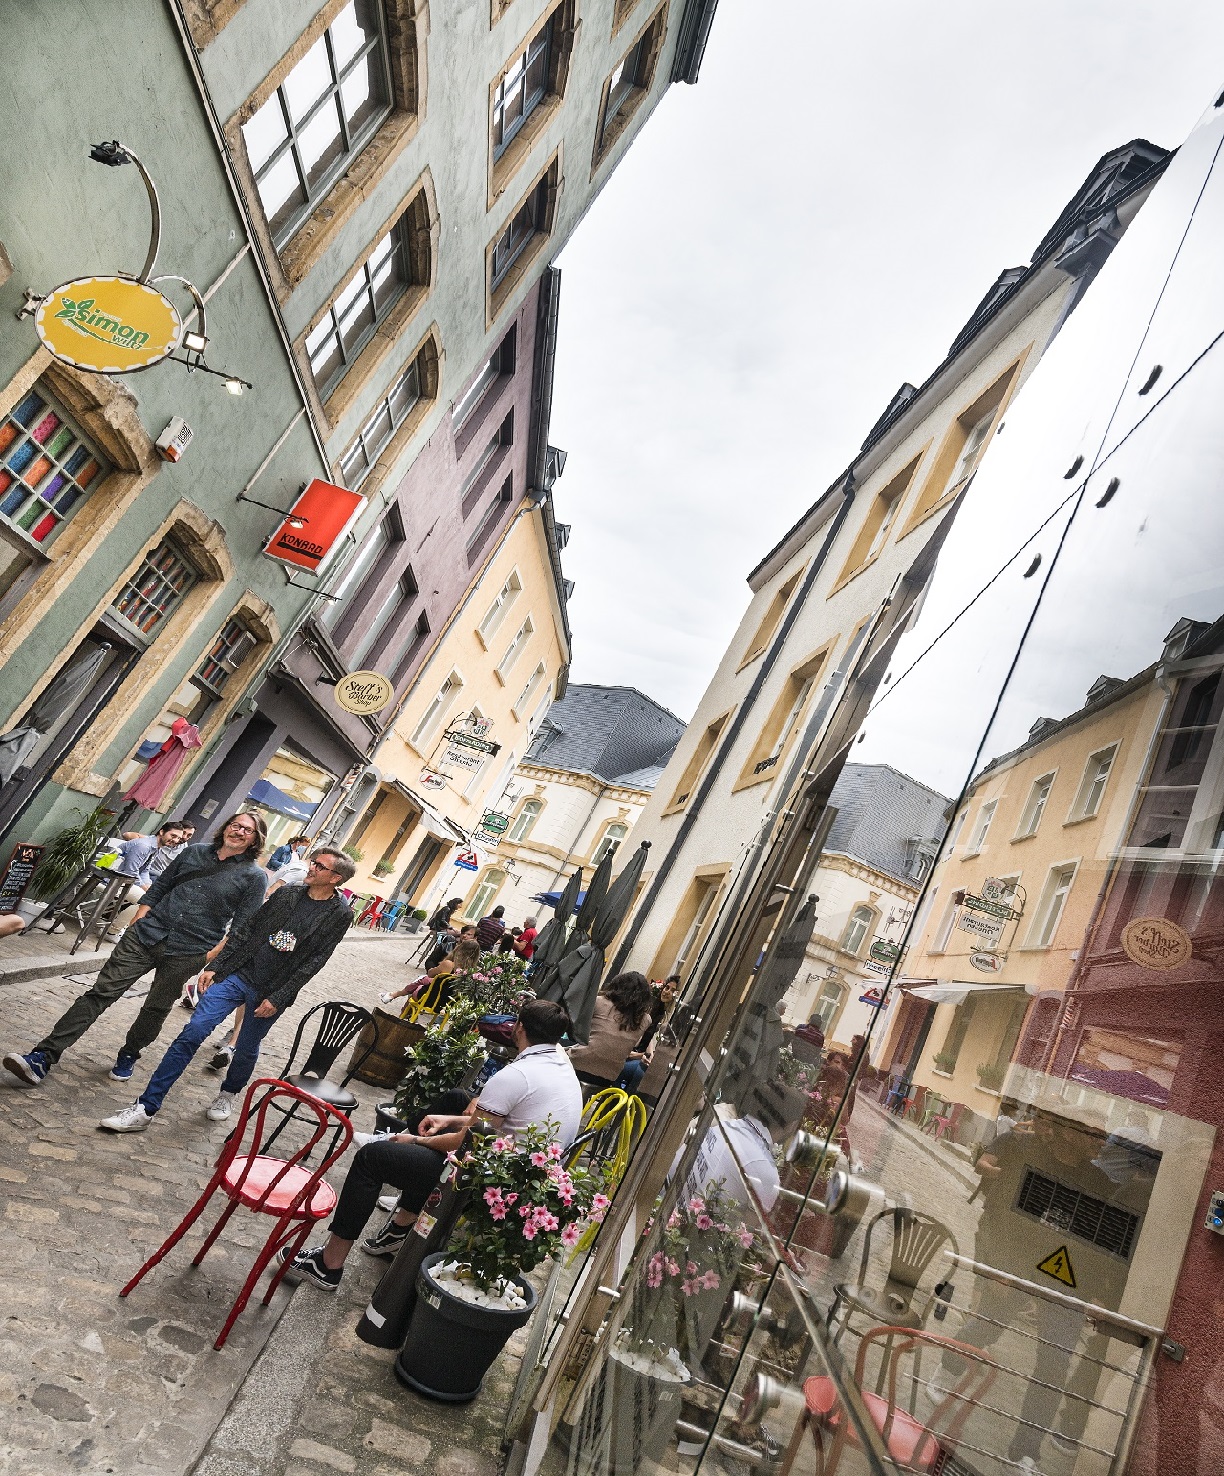 Une ruelle dans la vieille ville de Luxembourg avec des maisons et des cafés colorés. Deux hommes traversent la ruelle. Un homme est assis devant un café.